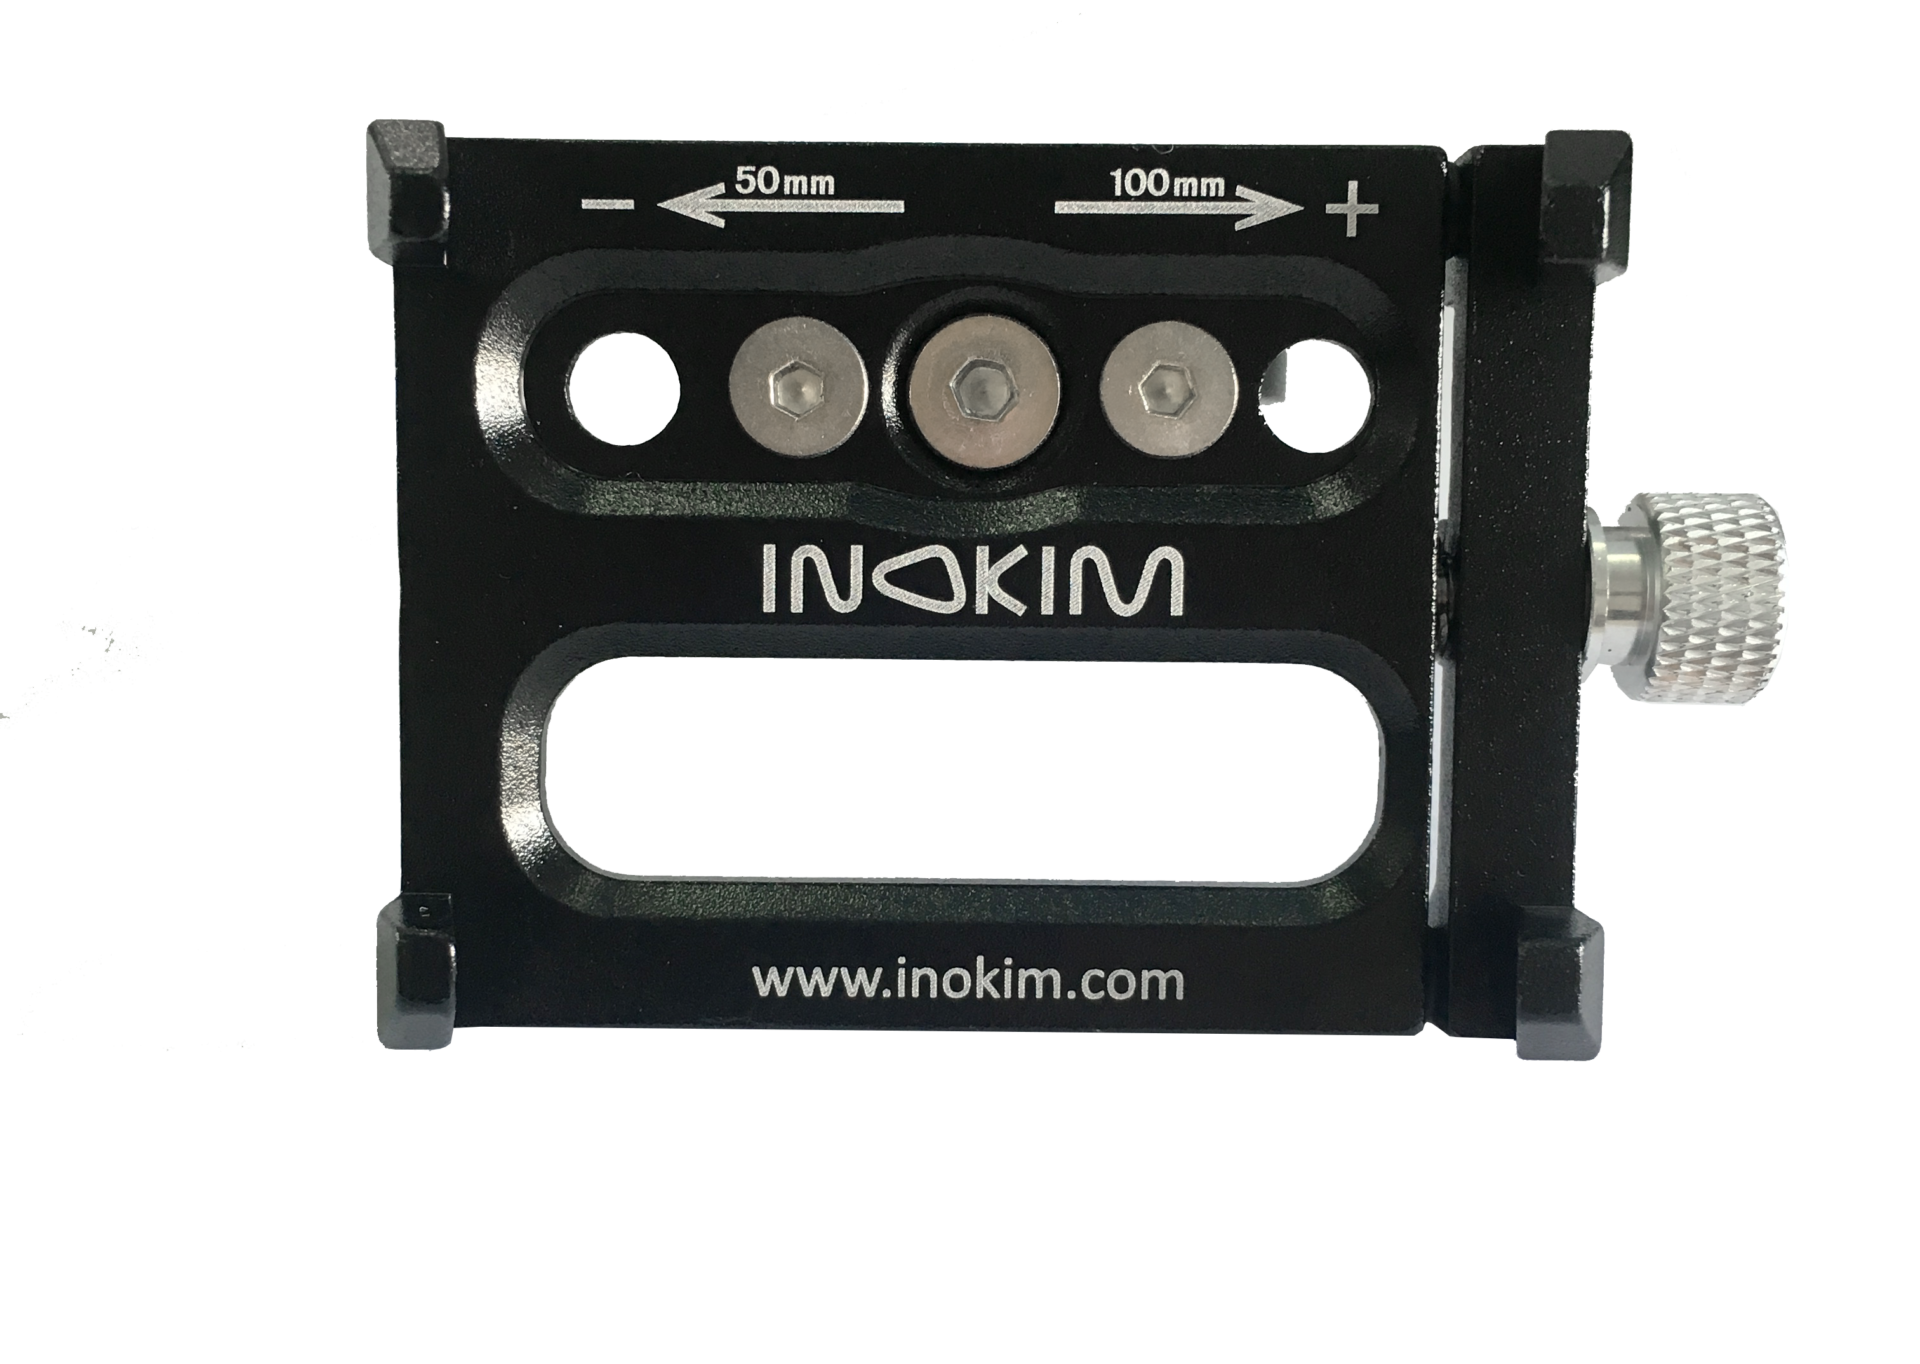 INOKIM phone holder